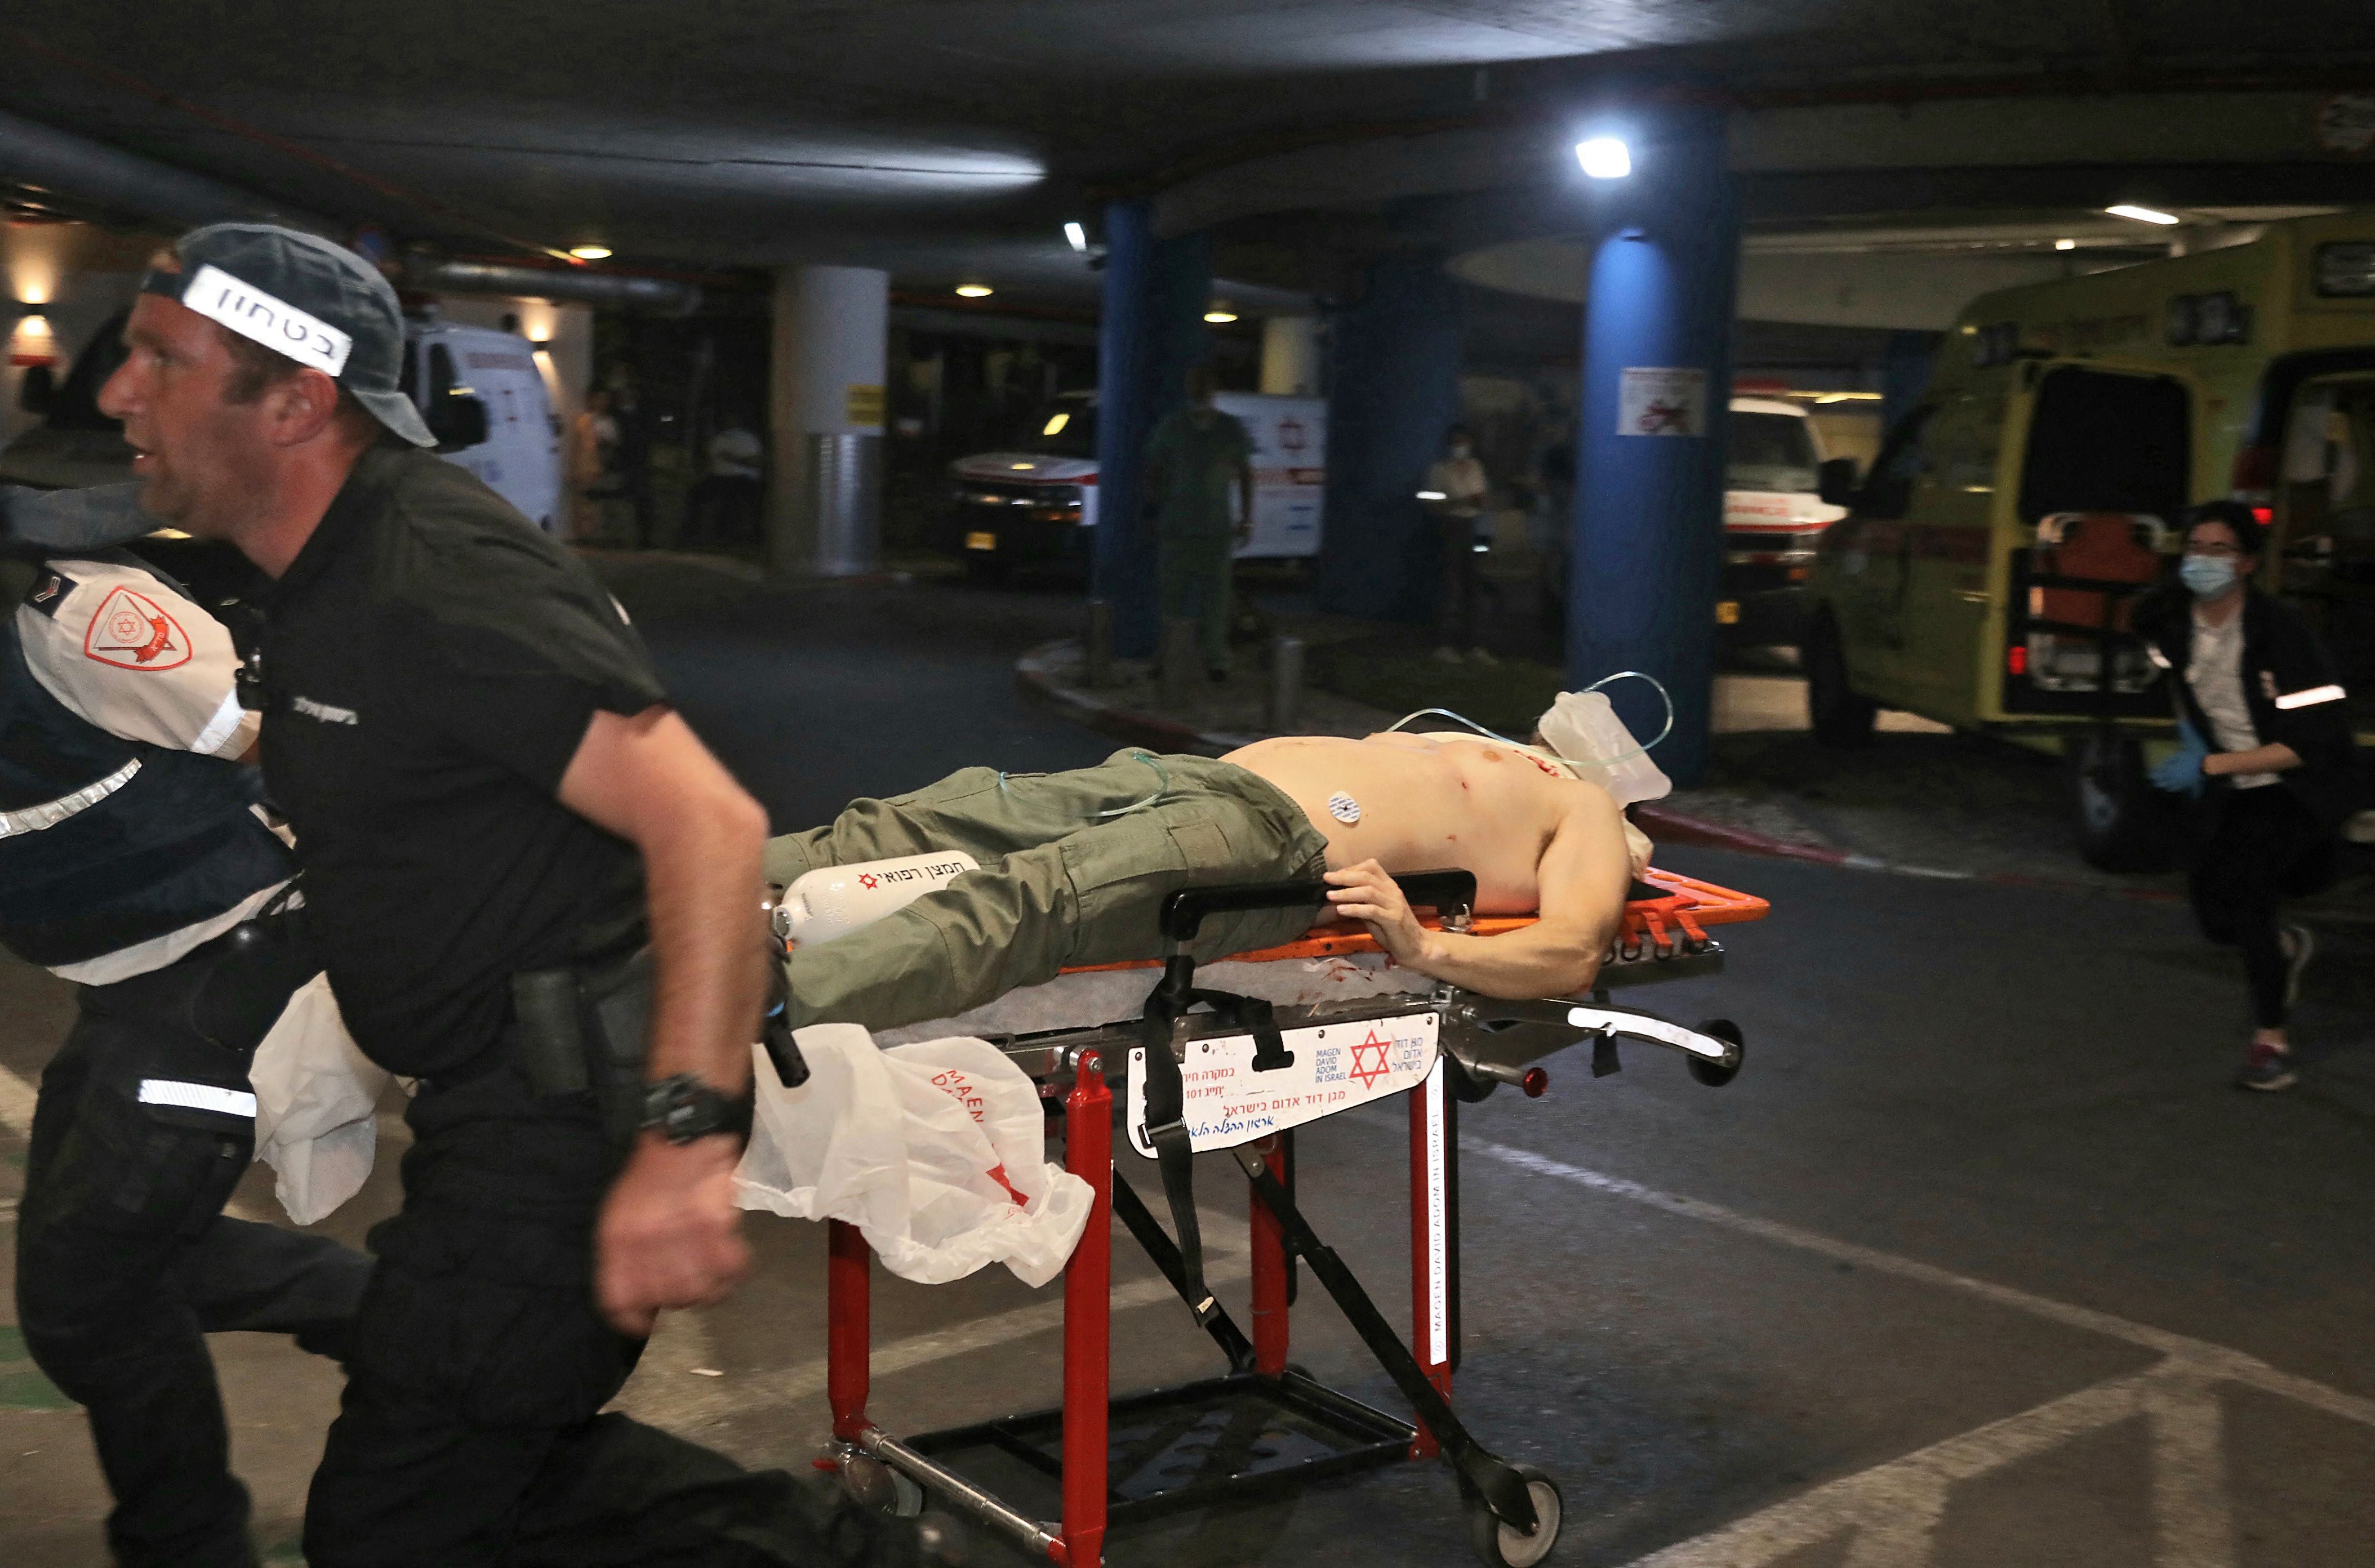 Una víctima herida llega al hospital Ichilov en la ciudad costera mediterránea de Tel Aviv, Israel